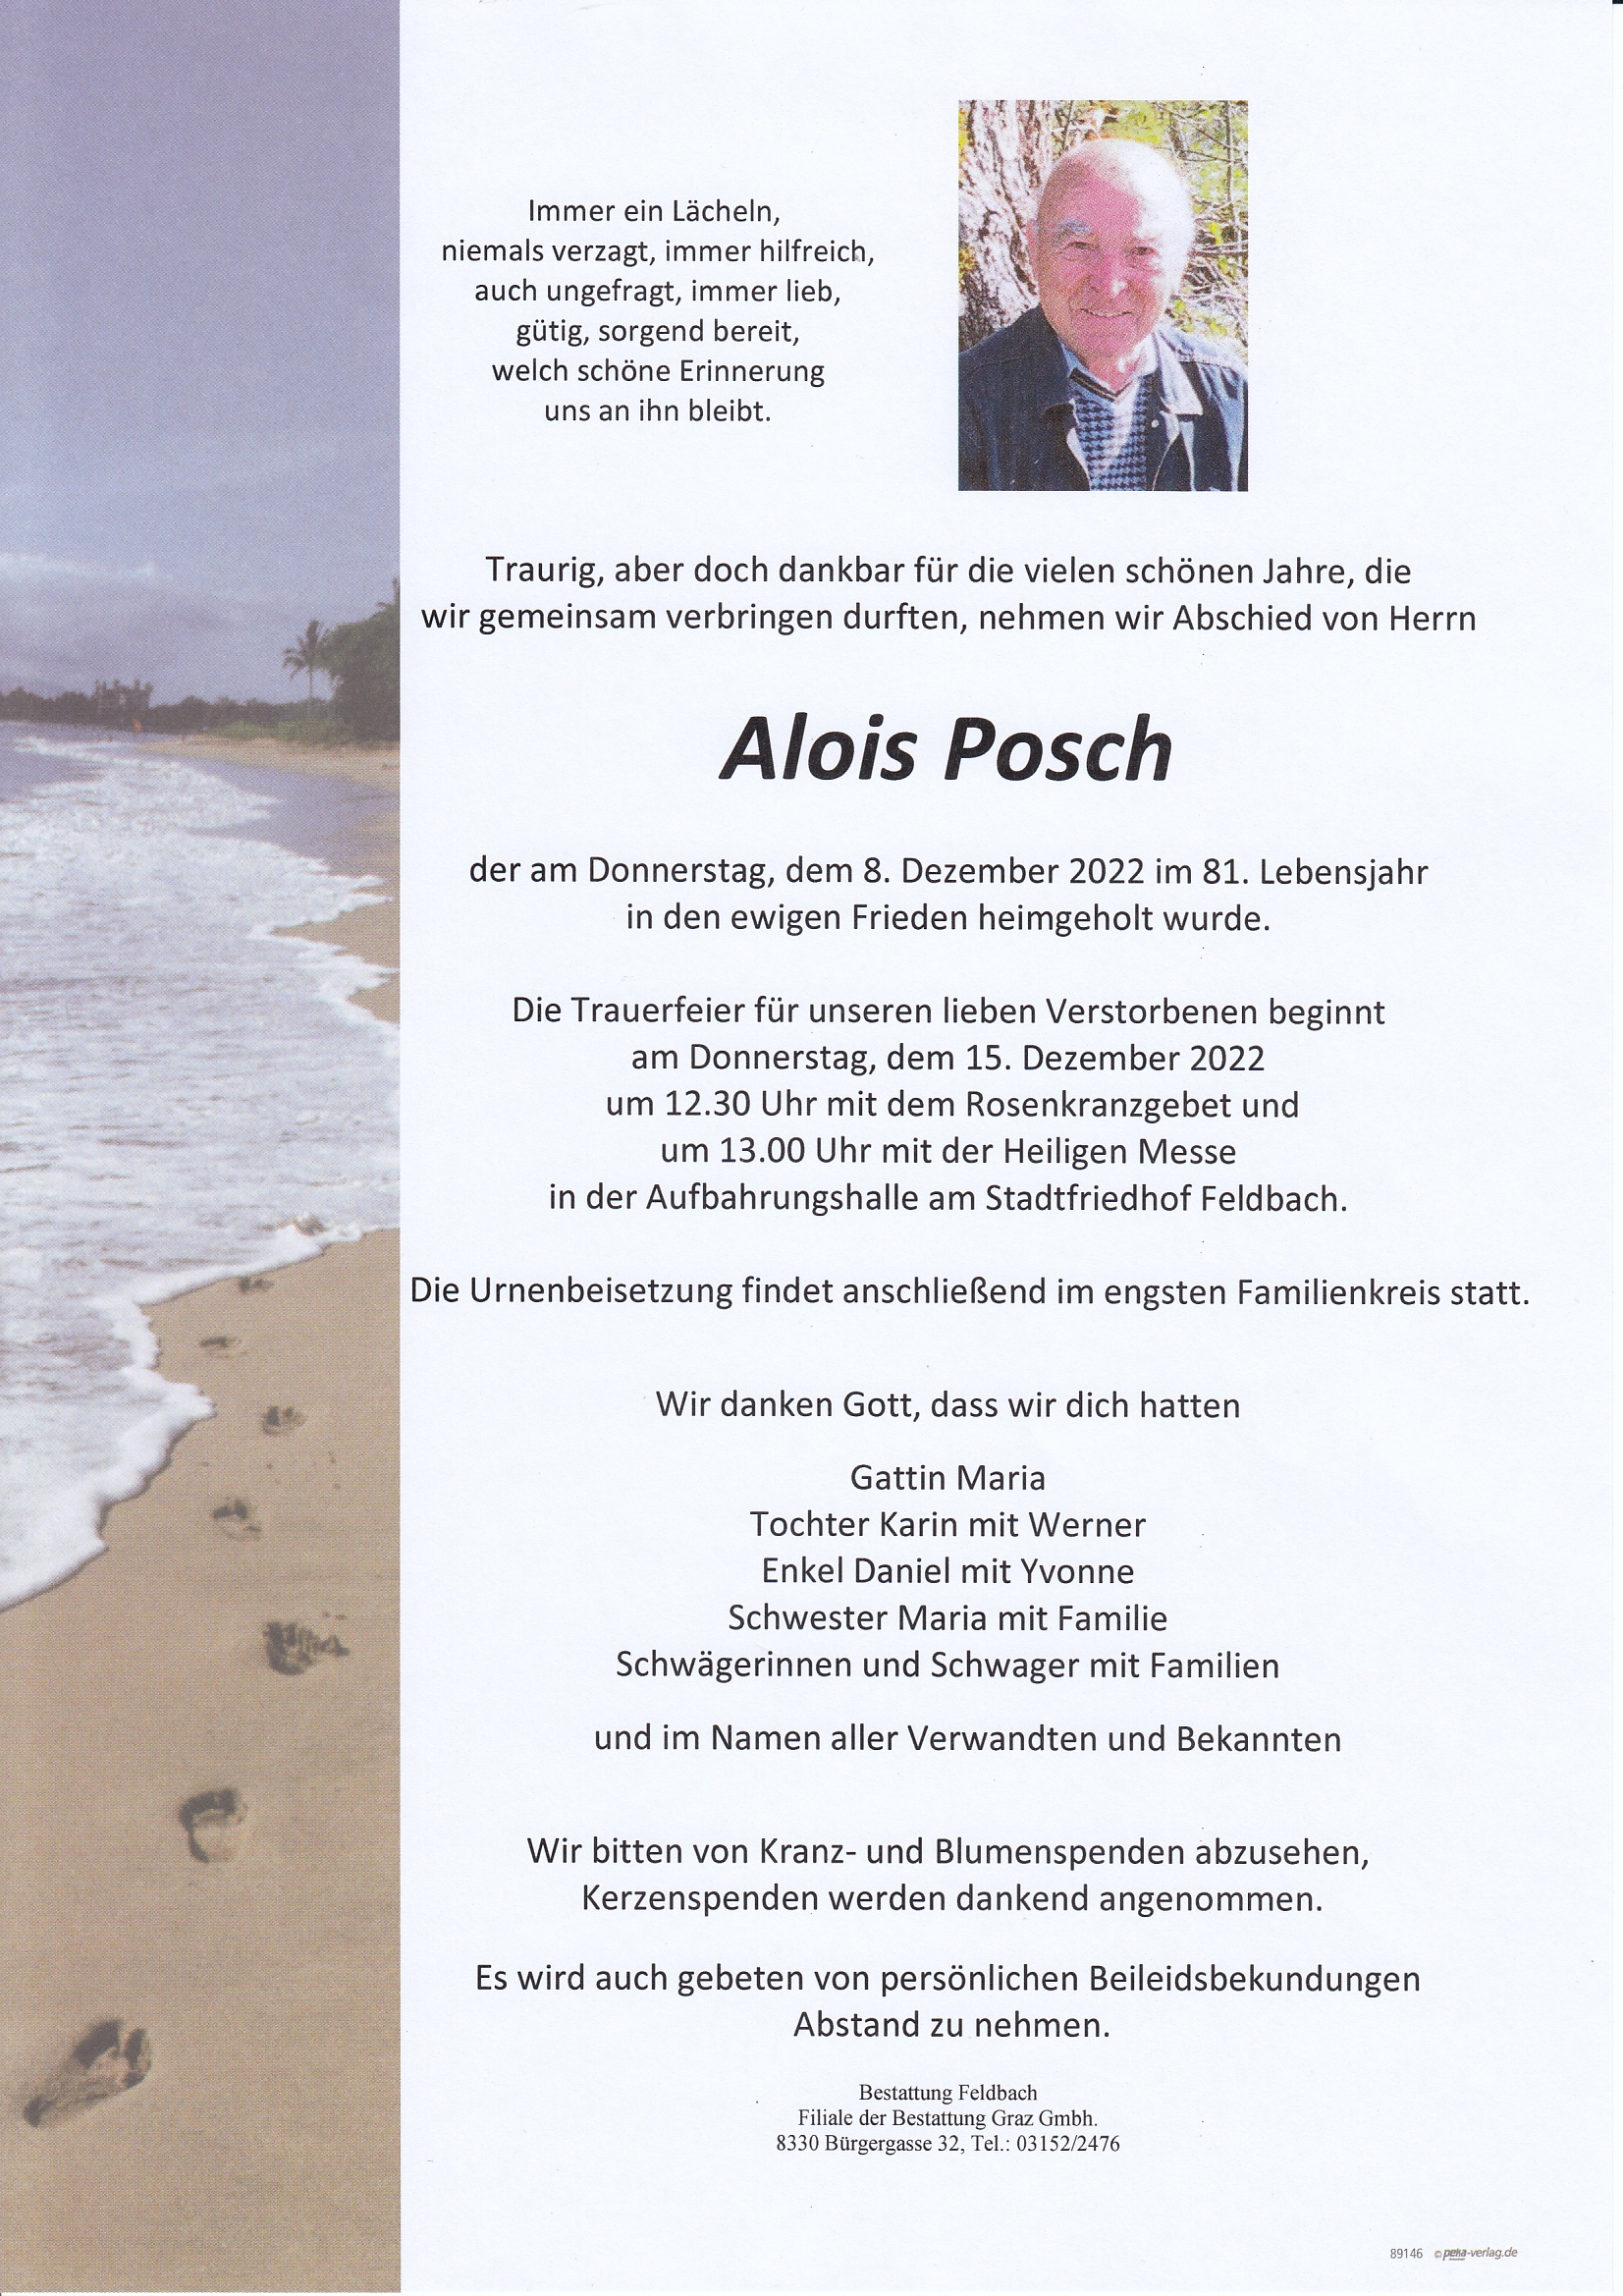 Alois Posch